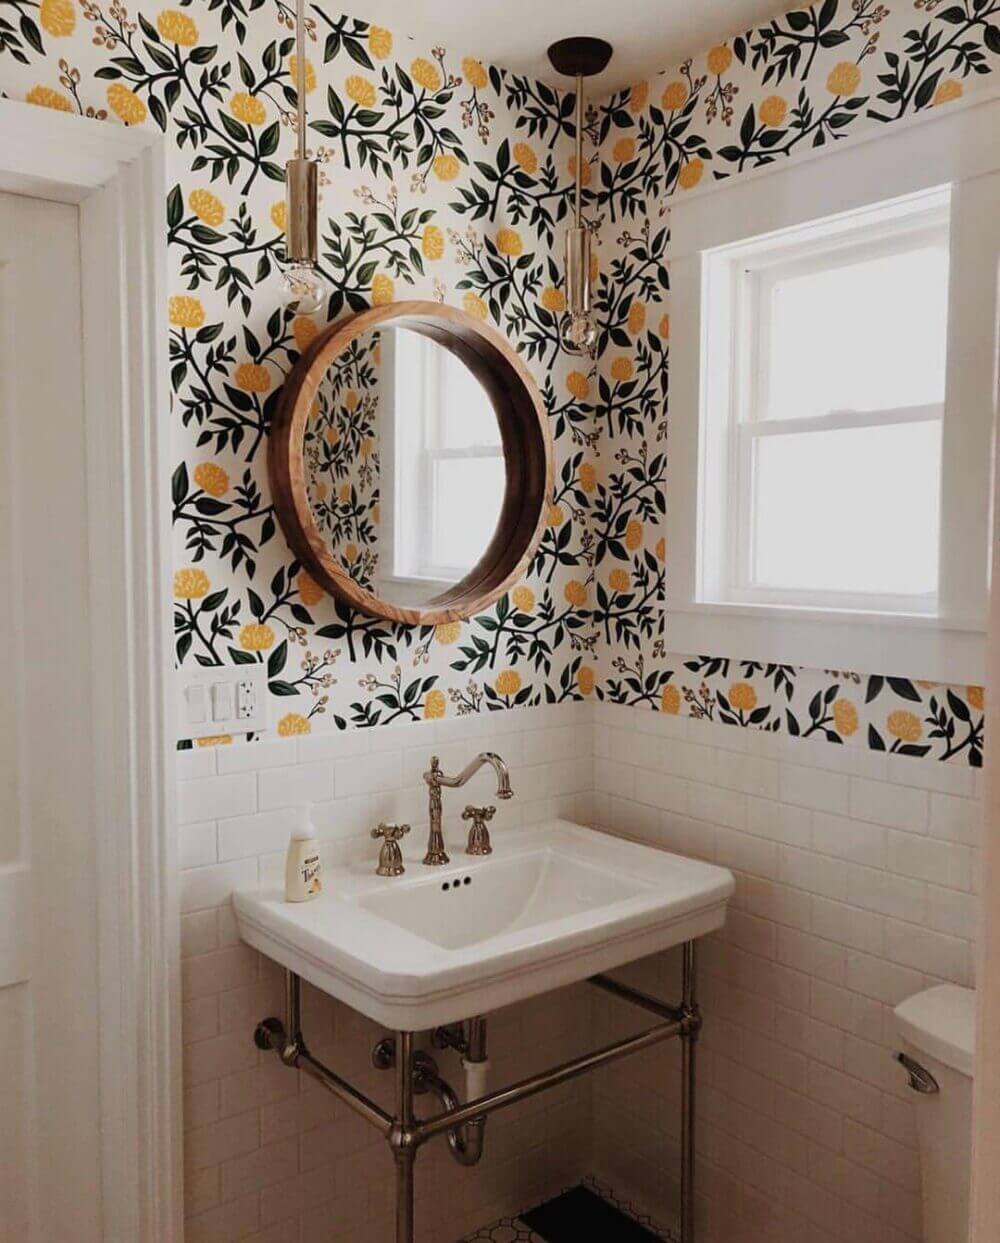 Elegant Bathroom Wall Decor Floral Bathroom Wall